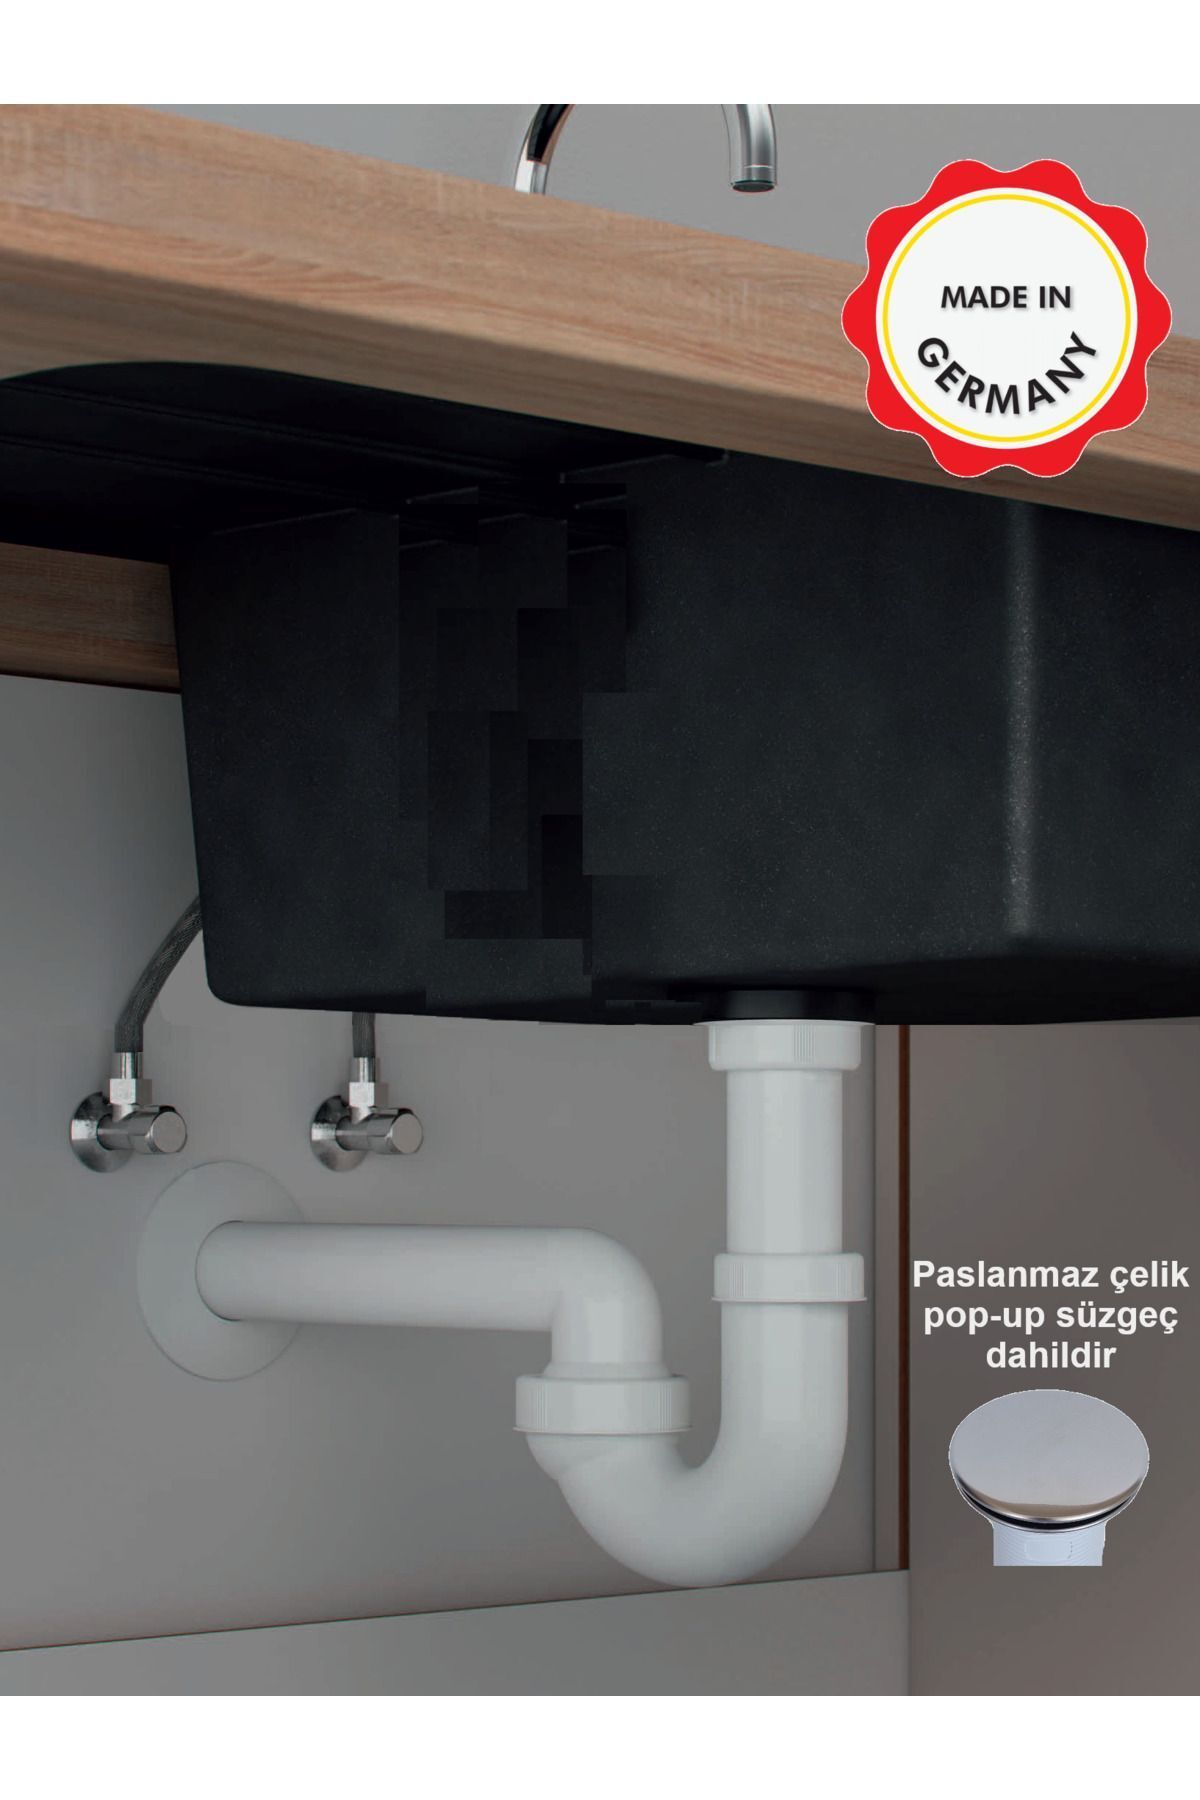 Dallmer Koku önleyici lavabo sifonu, paslanmaz çelik pop-up süzgeçli, mafsallı 40lık çıkış borulu